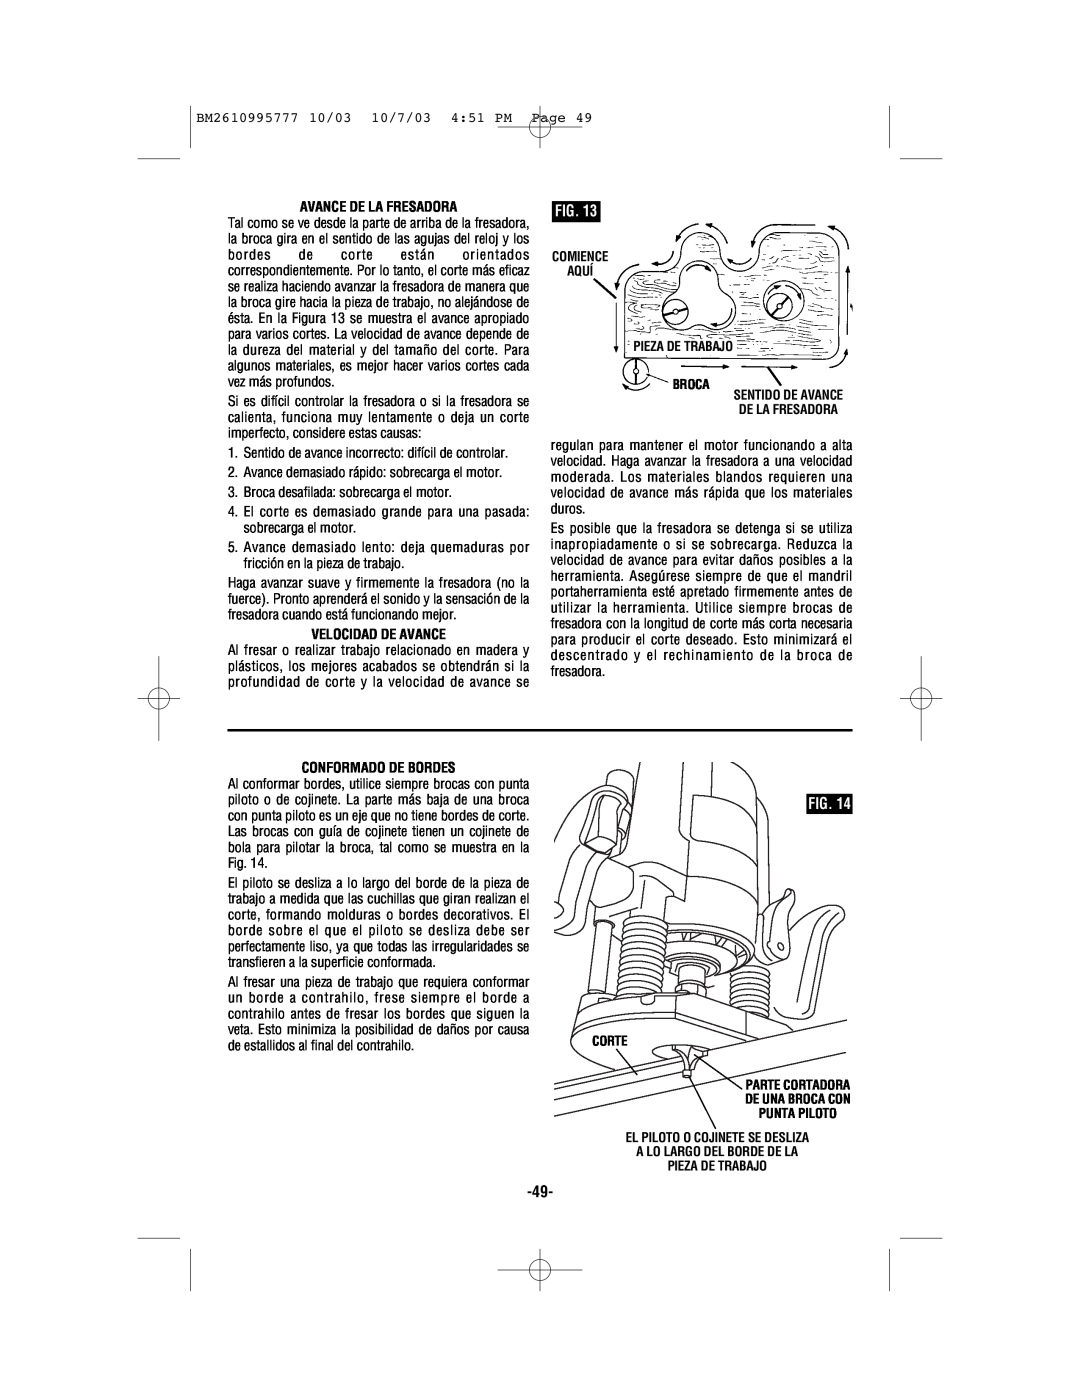 Bosch Power Tools 1619EVS manual BM2610995777 10/03 10/7/03 451 PM Page, Avance De La Fresadora, Velocidad De Avance 